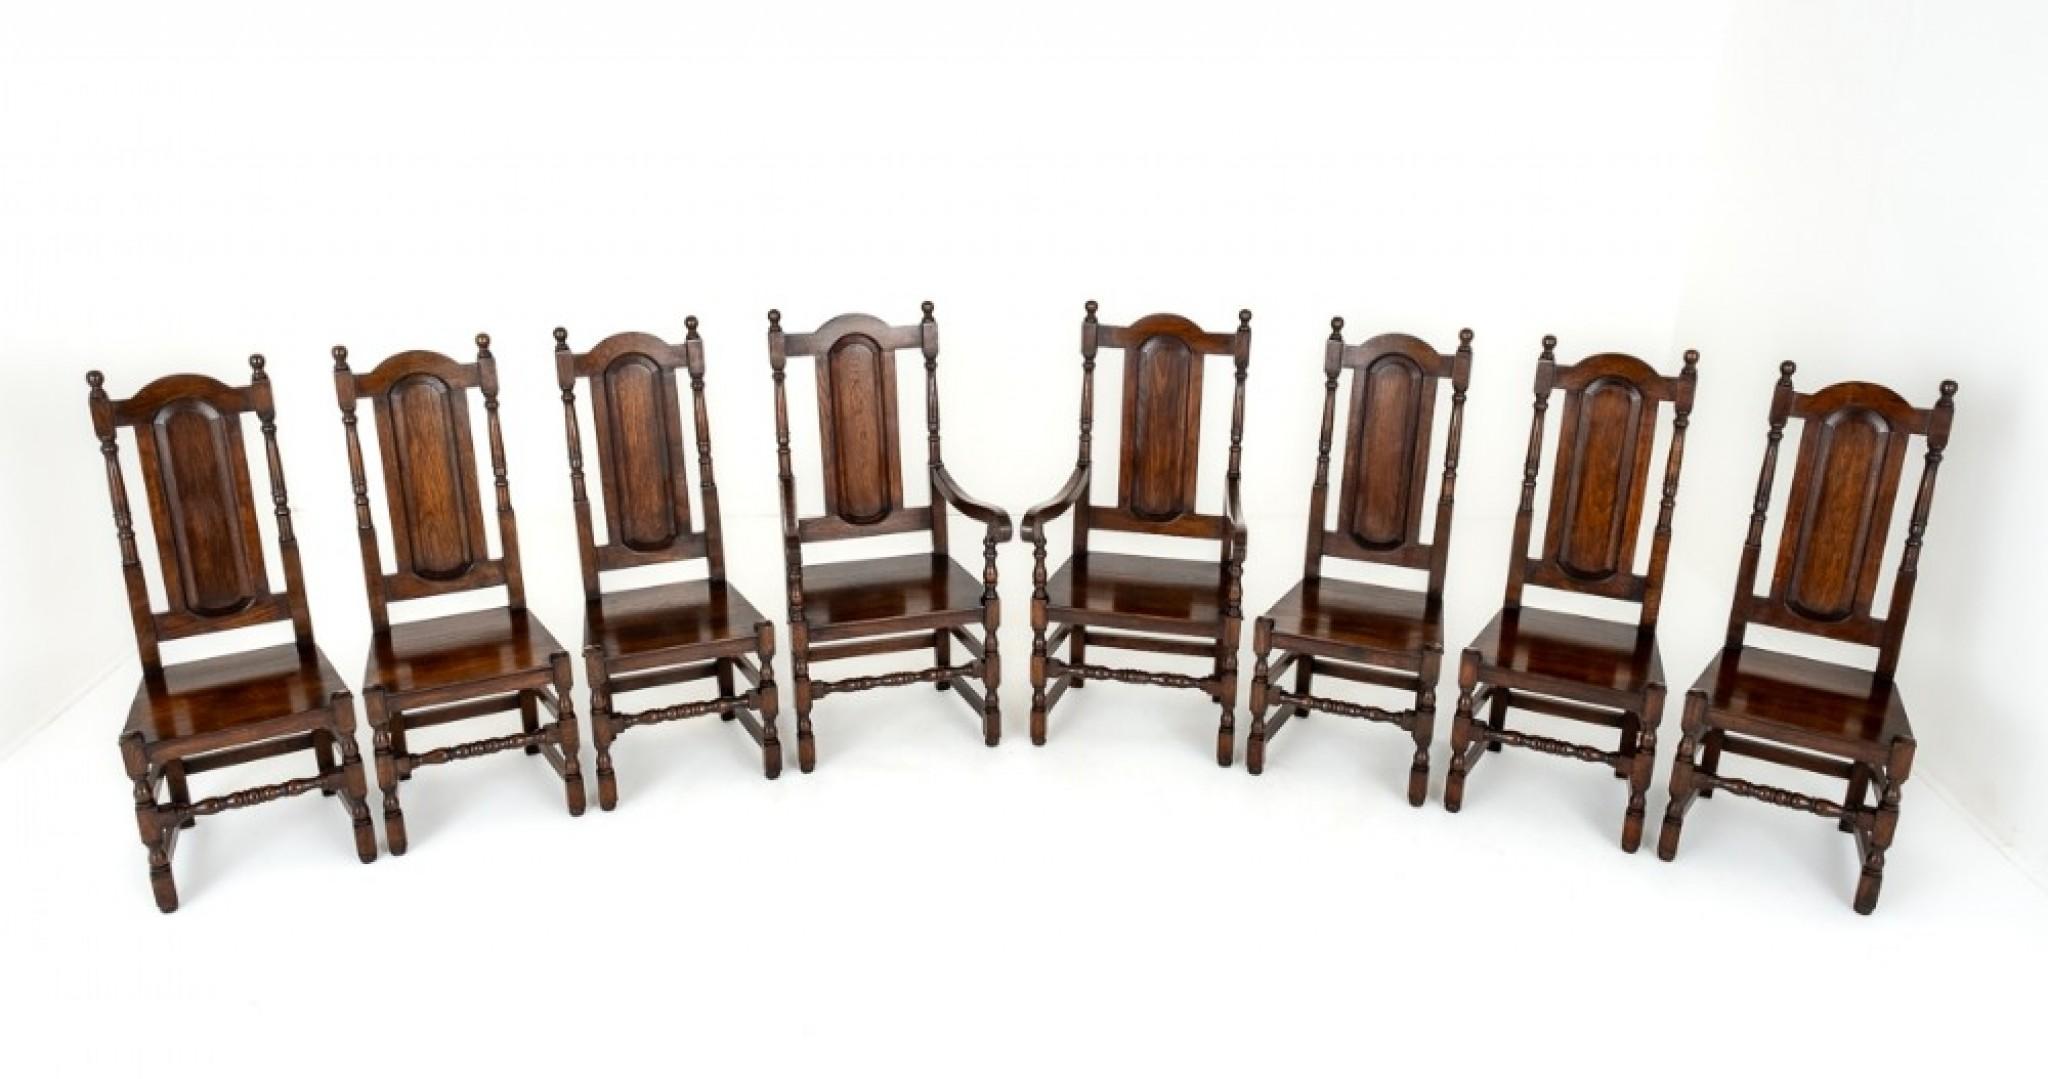 Satz von 8 (6+2) Eichenstühlen im Tudor-Stil. Diese Stühle haben eine getäfelte Rückenlehne und getäfelte Sitze. Die Stühle haben gedrehte Stützen an den Rückenlehnen. Die geformten Arme werden von geformten Säulen getragen. Die Stühle haben eine